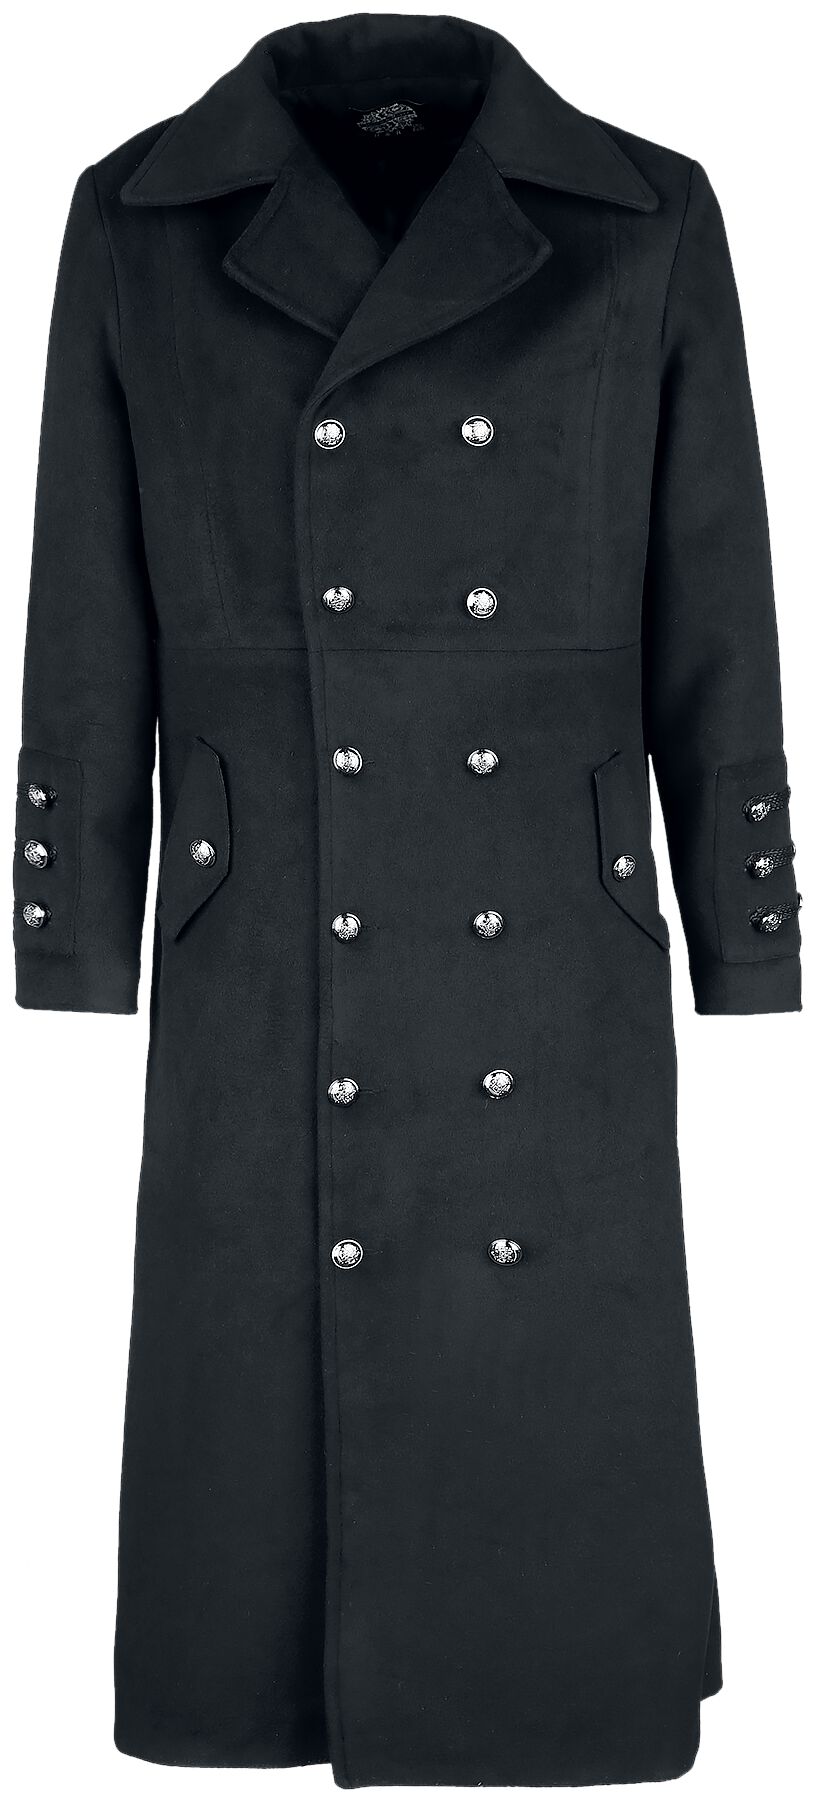 Image of Cappotto invernale Gothic di H&R London - Classic Military Coat - L a 5XL - Uomo - nero